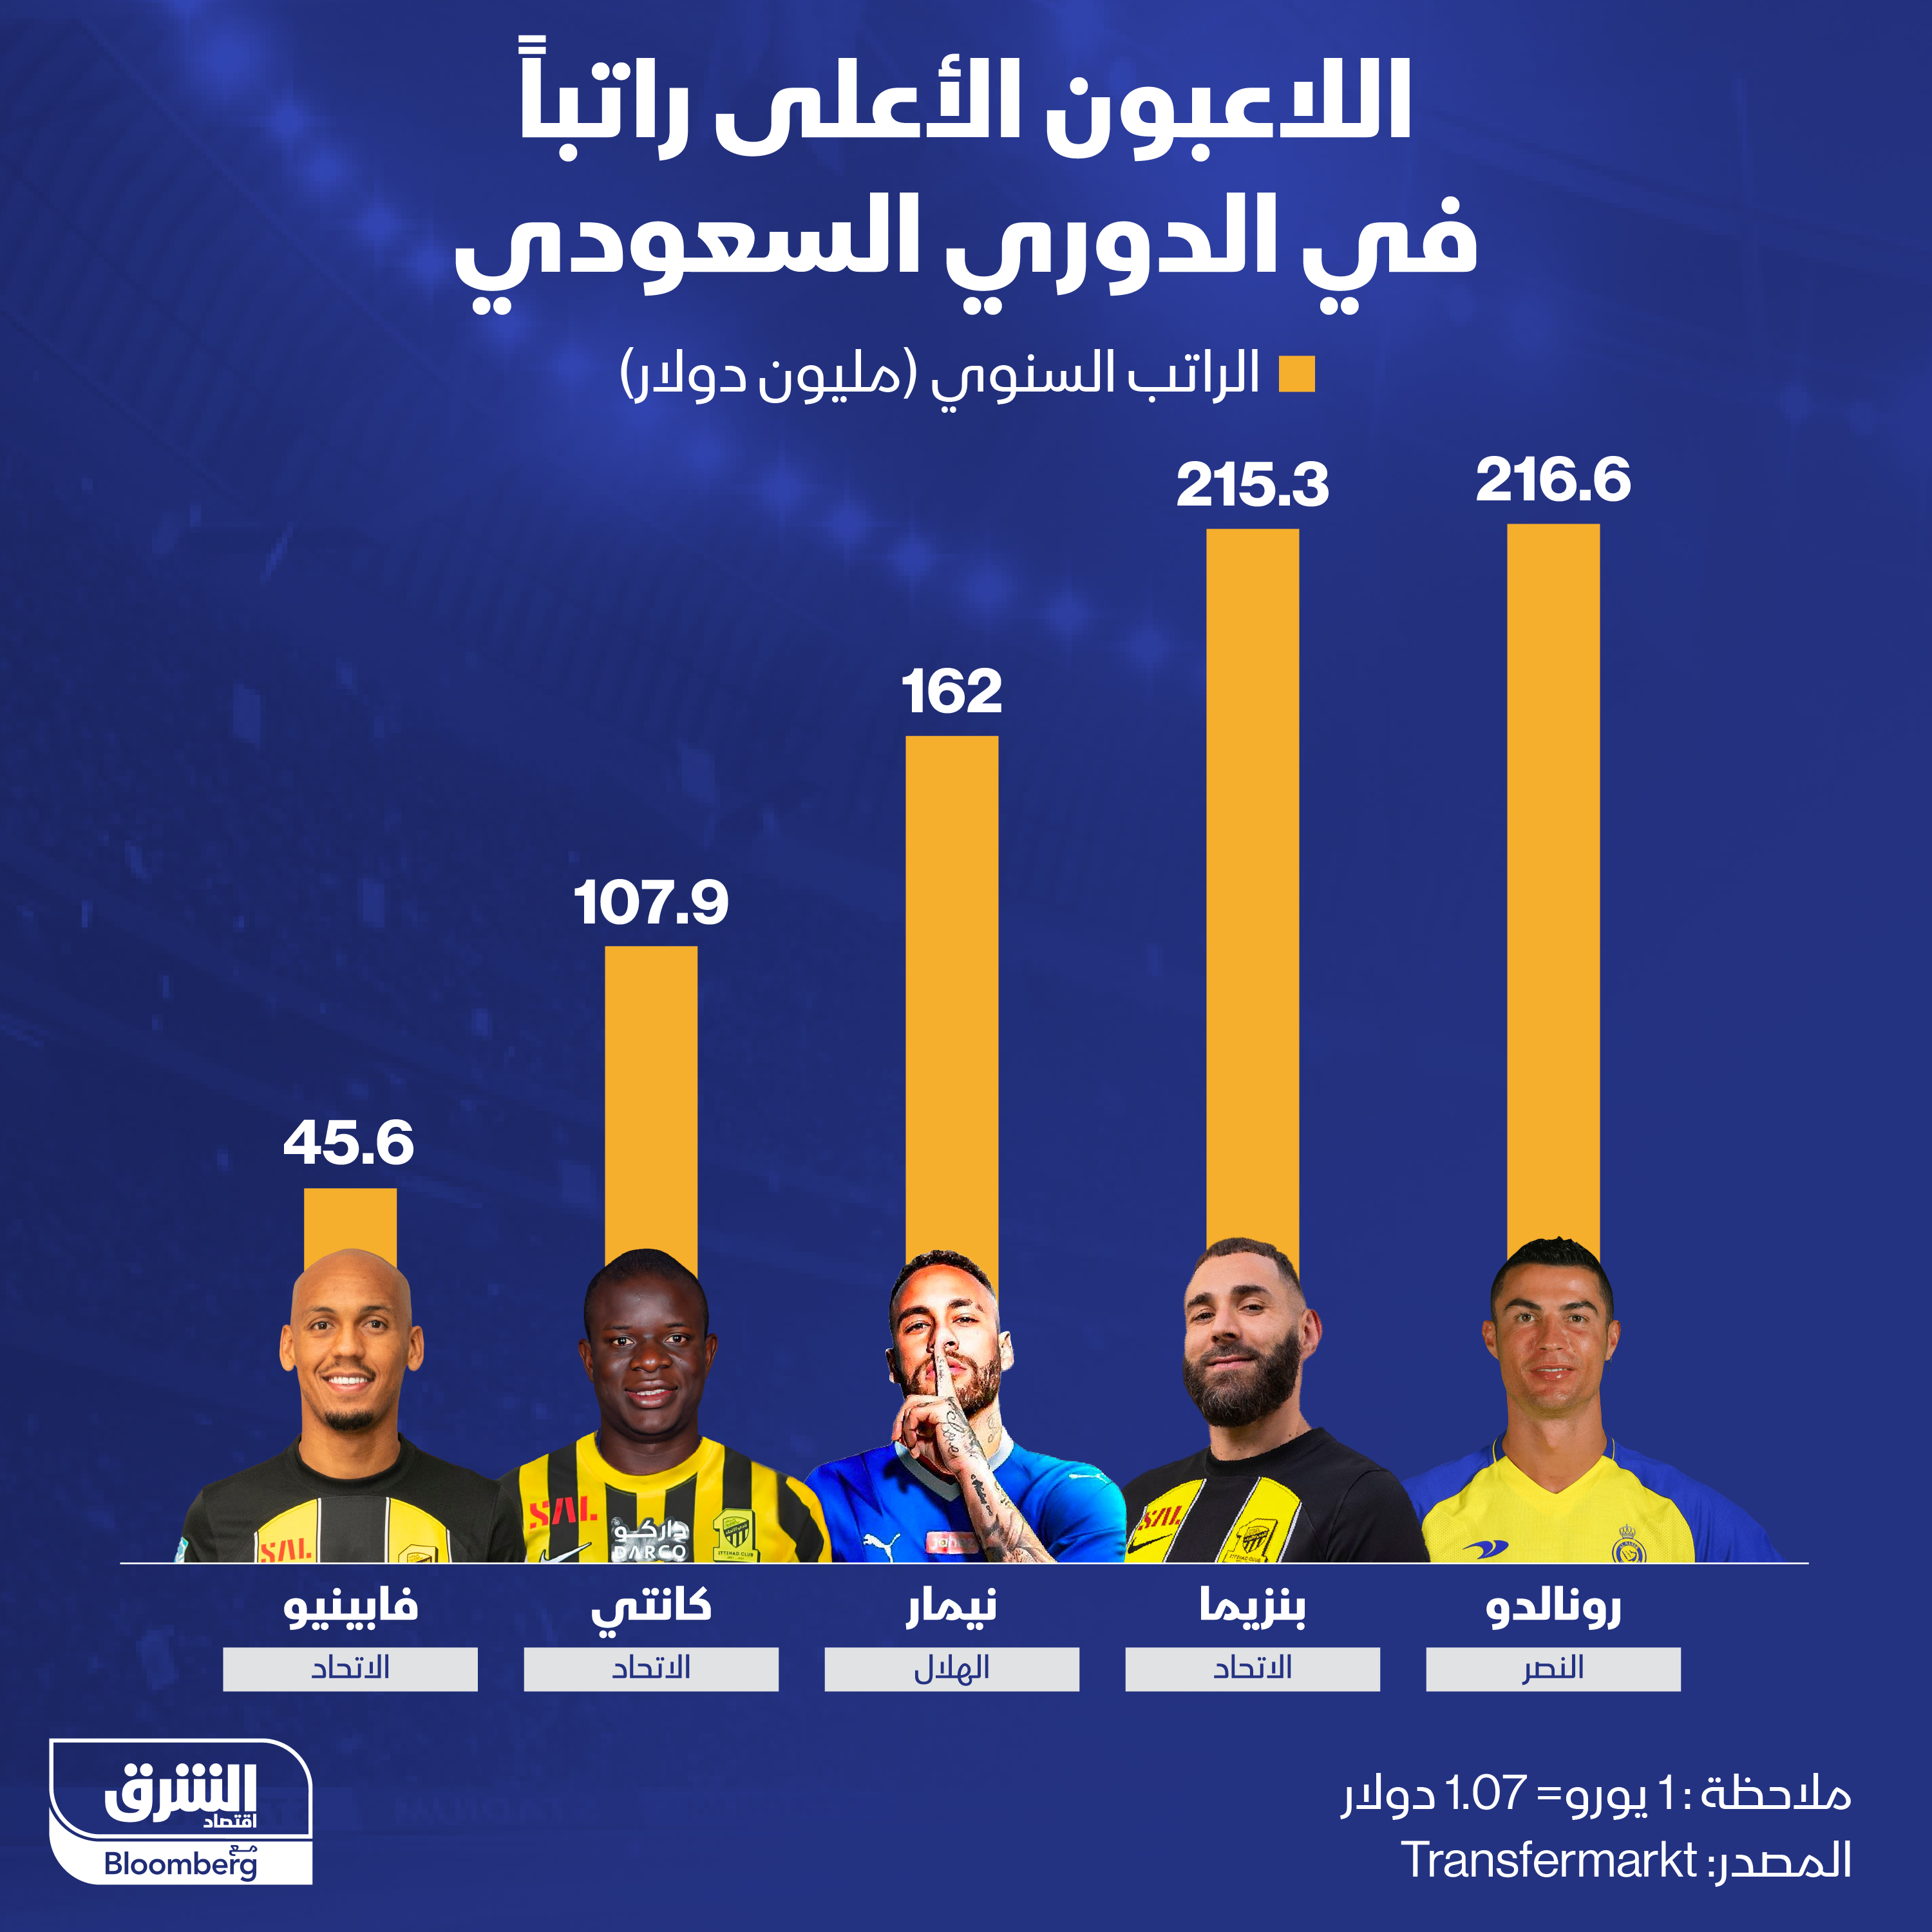 اللاعبون الأعلى راتباً في الدوري السعودي.. نيمار يتقاضى 162 مليون دولار سنوياً